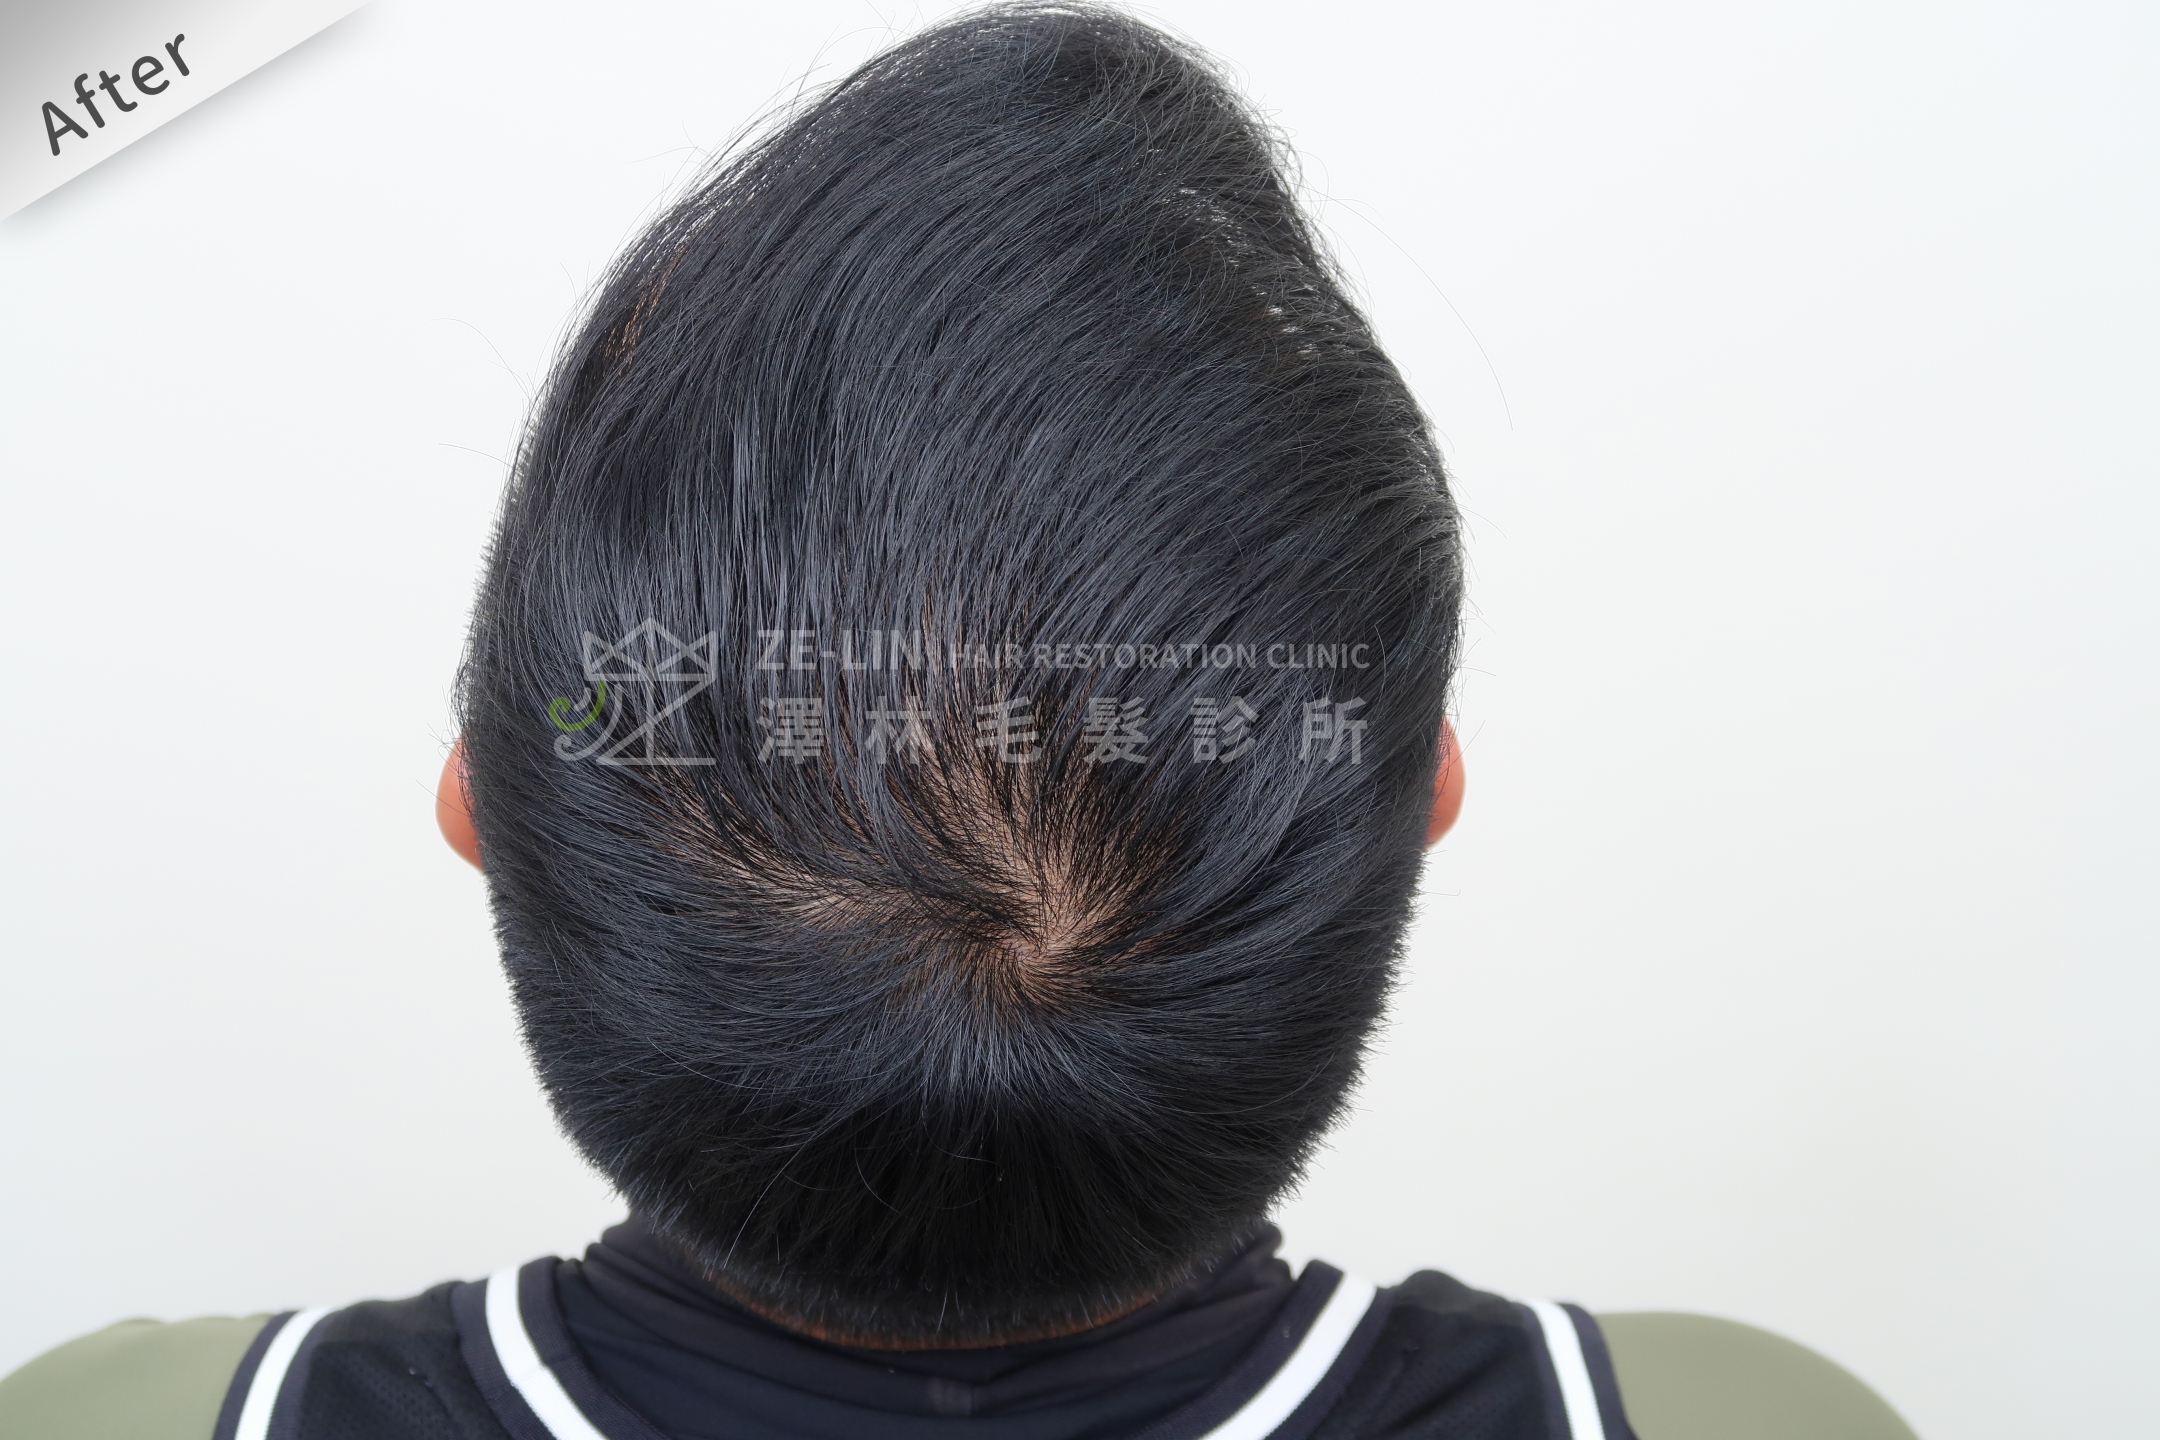 生髮育髮治療PRP自體生長因子注射治療雄性禿頂部術後3